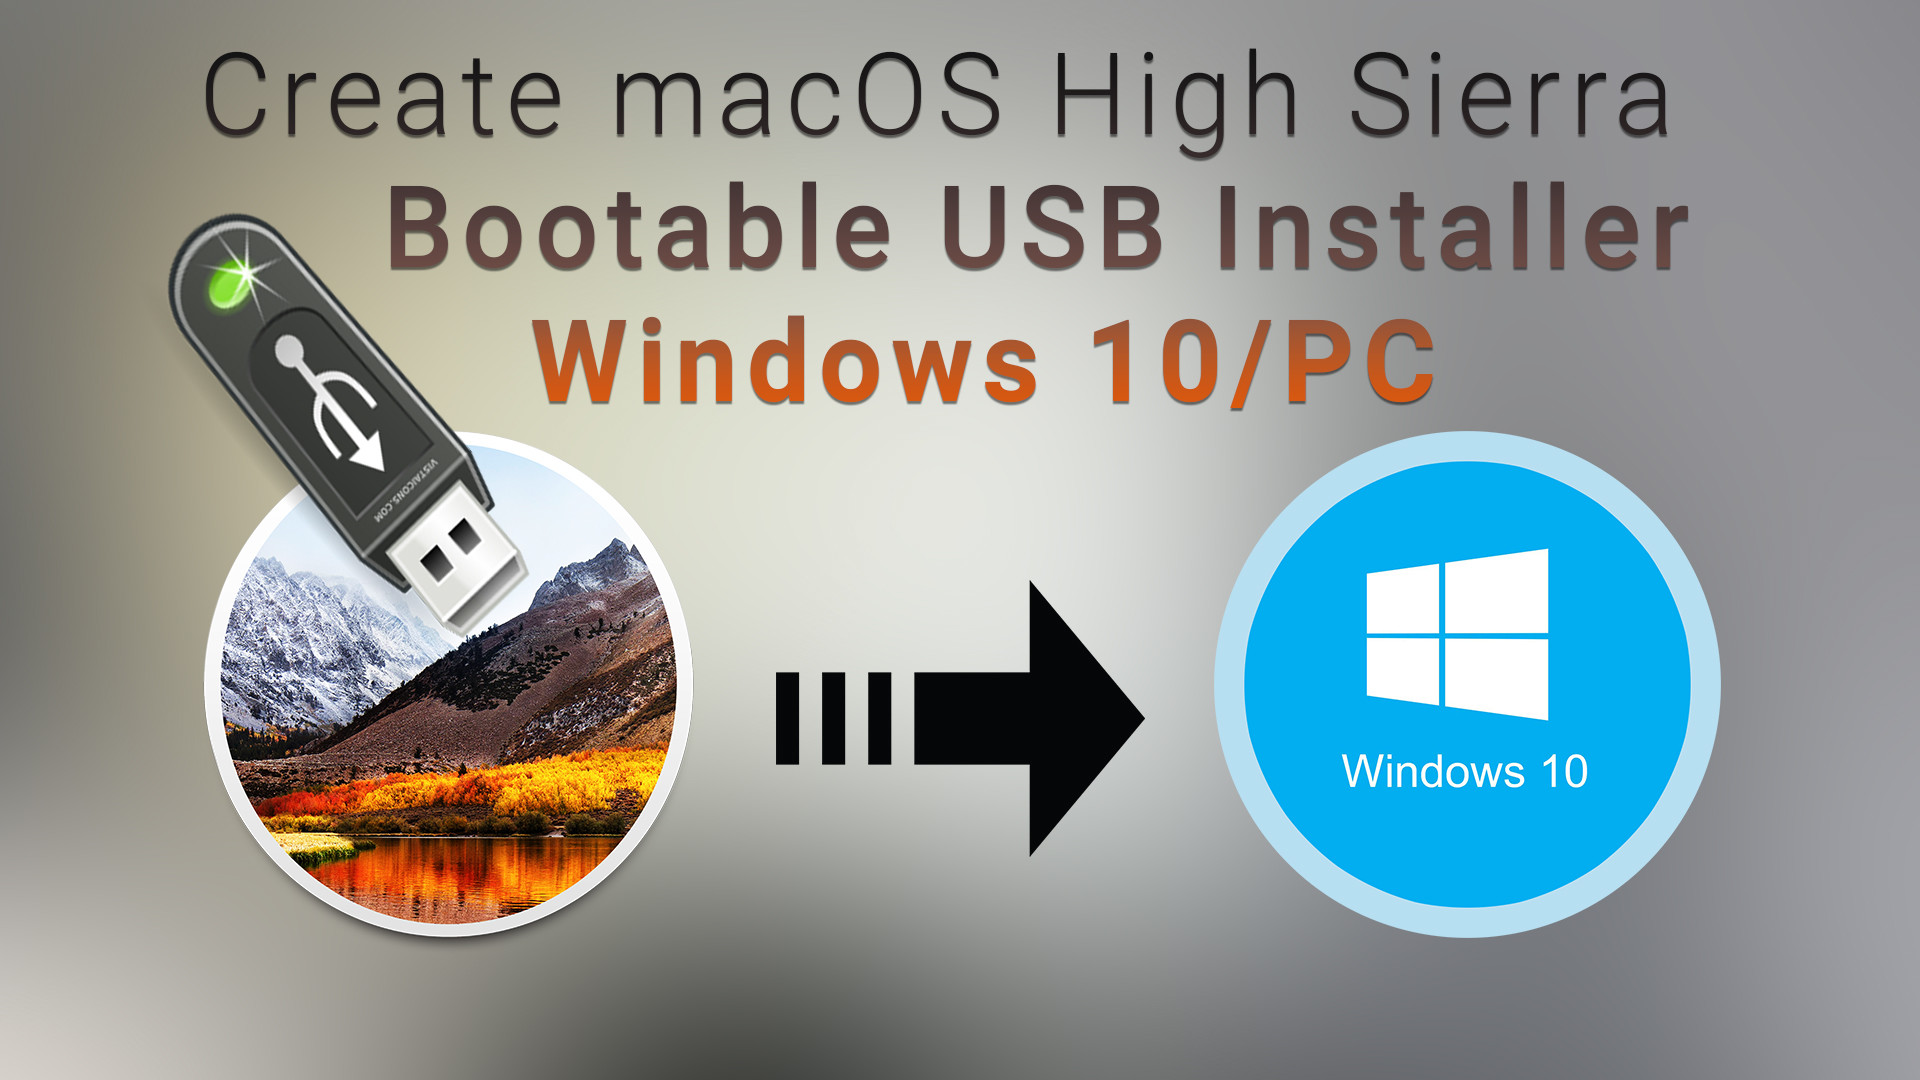 lezing Keer terug Stoel How to Create macOS High Sierra Bootable USB Installer on Windows 10 -  wikigain